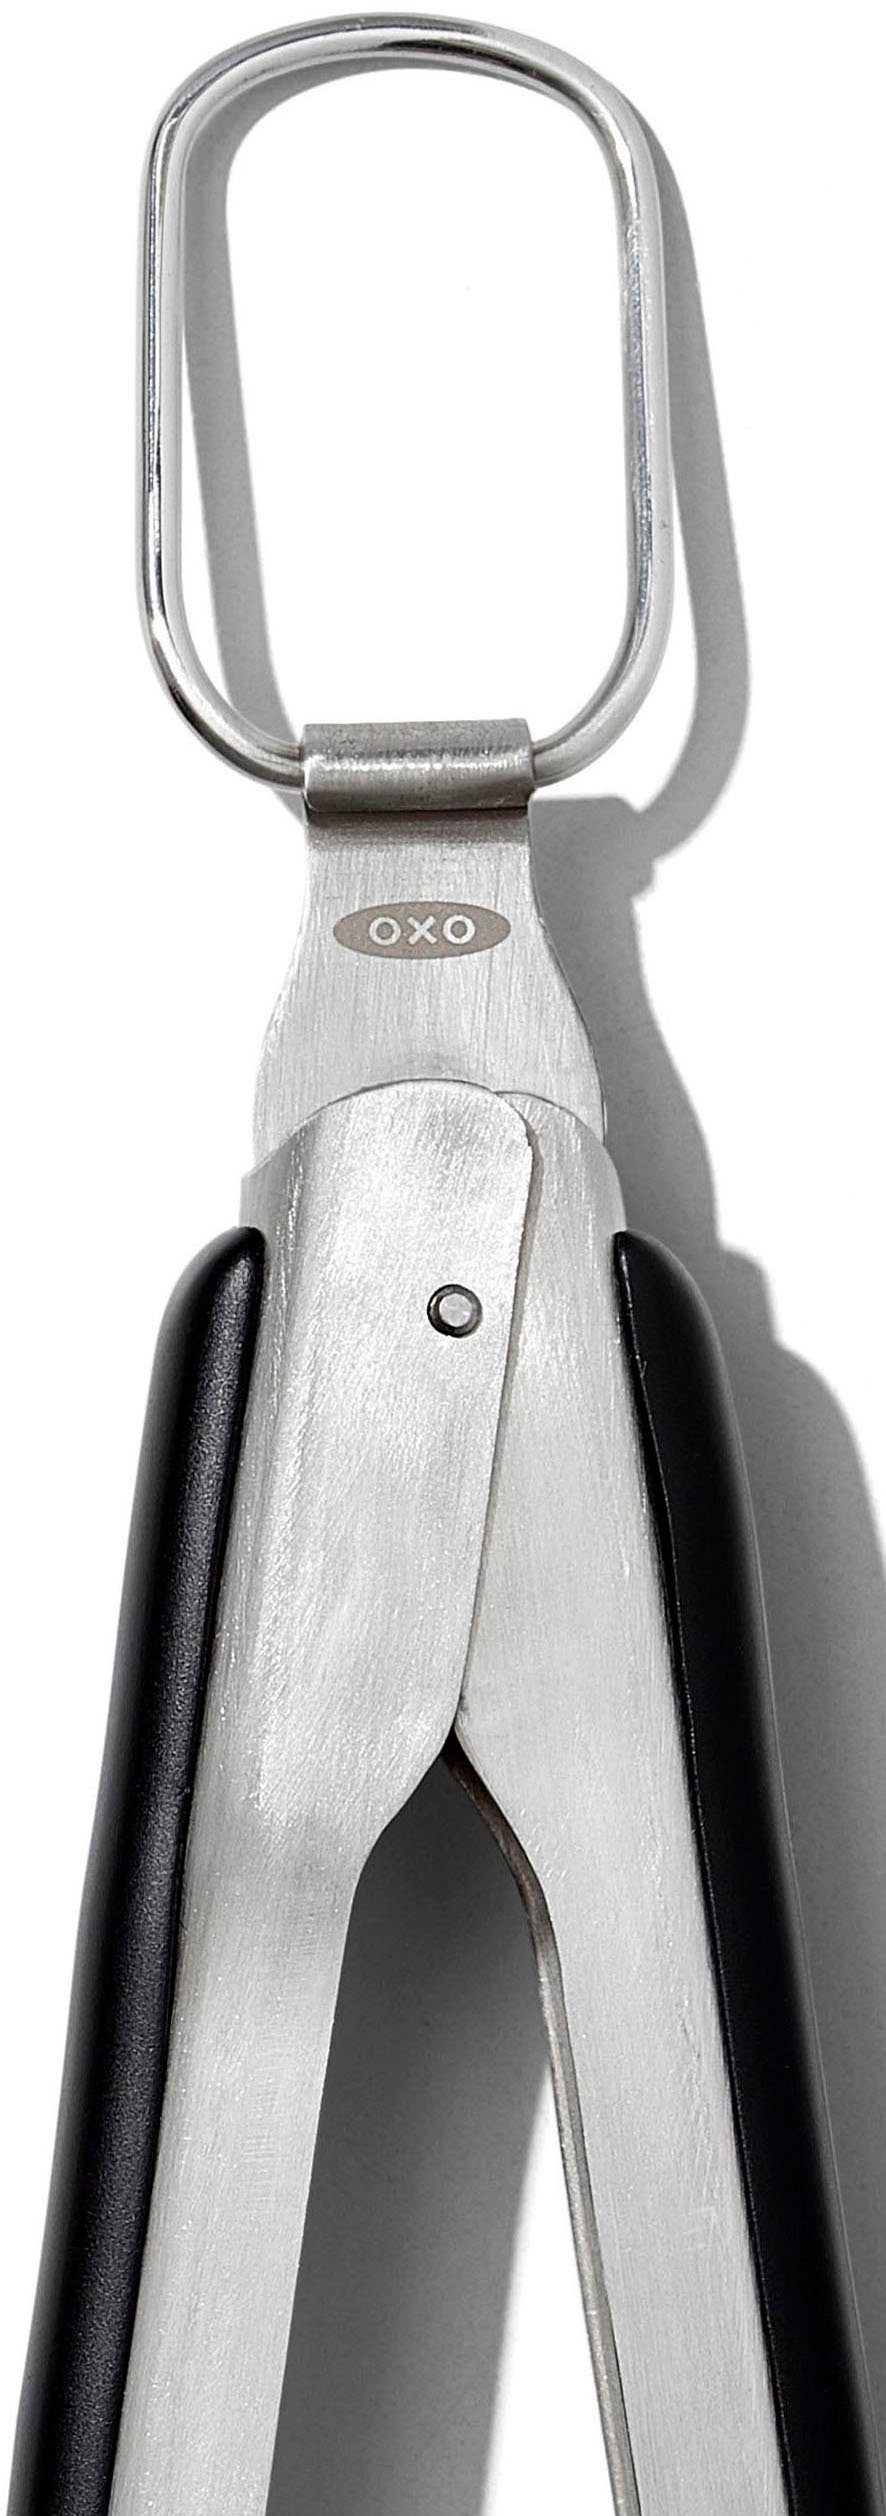 Edelstahl integriertem Grillzange, mit OXO Grips Good Flaschenöffner,